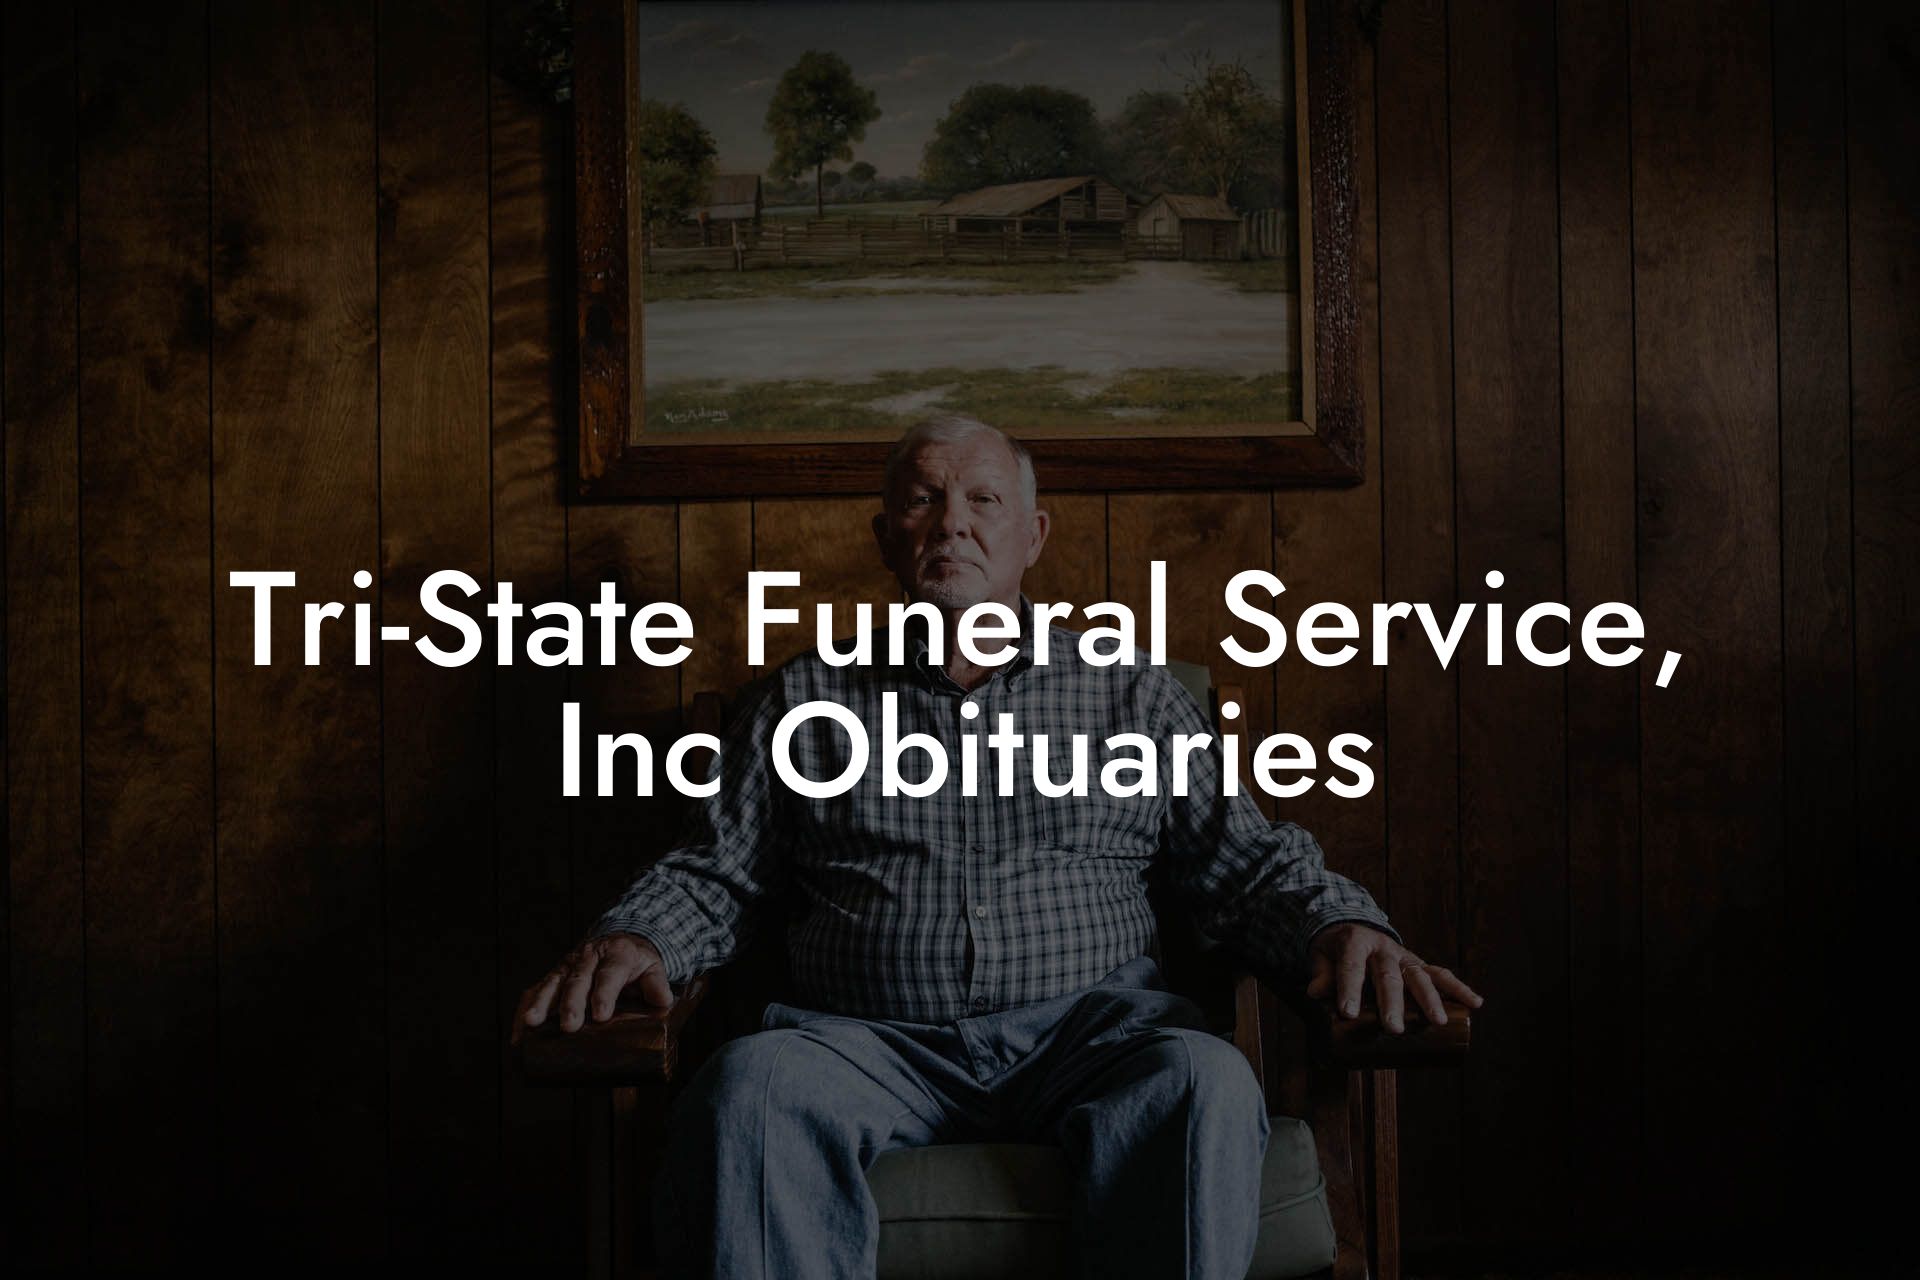 Tri-State Funeral Service, Inc Obituaries